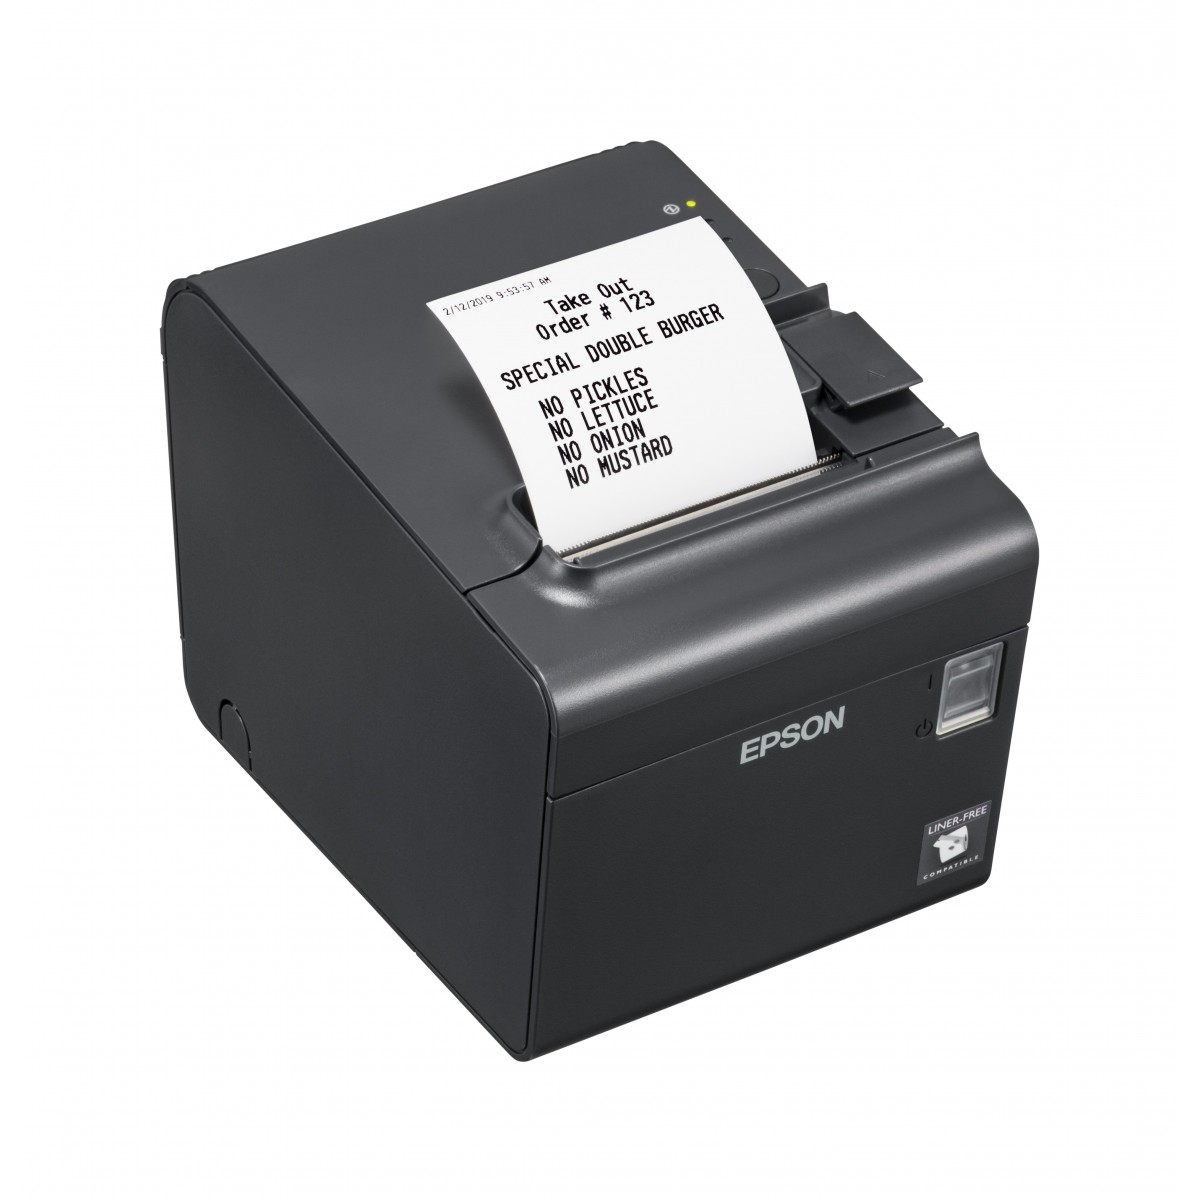 Epson TM-L90LF (681) - Thermal - POS printer - 203 x 203 DPI - 170 mm-sec - 10.2 cm - Wired